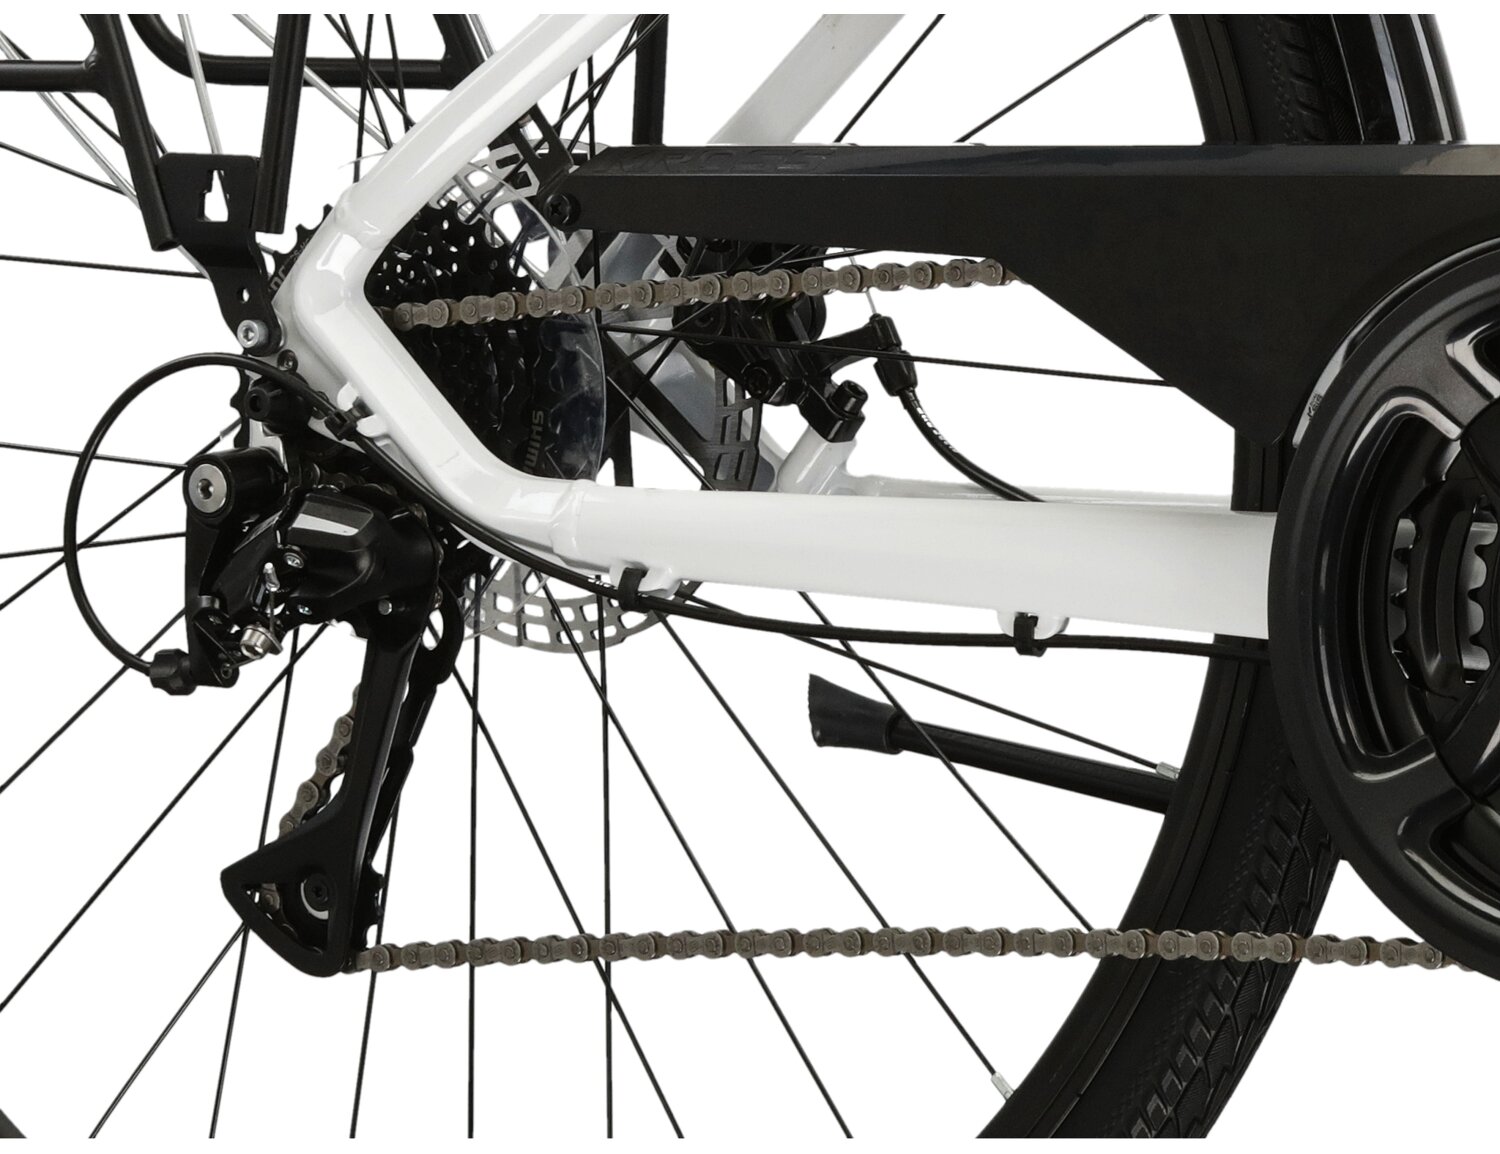  Tylna siedmiobiegowa przerzutka Shimano Acera 3020 oraz mechanicznehamulce tarczowe w rowerze trekkingowym damskim KROSS Trans 3.0 